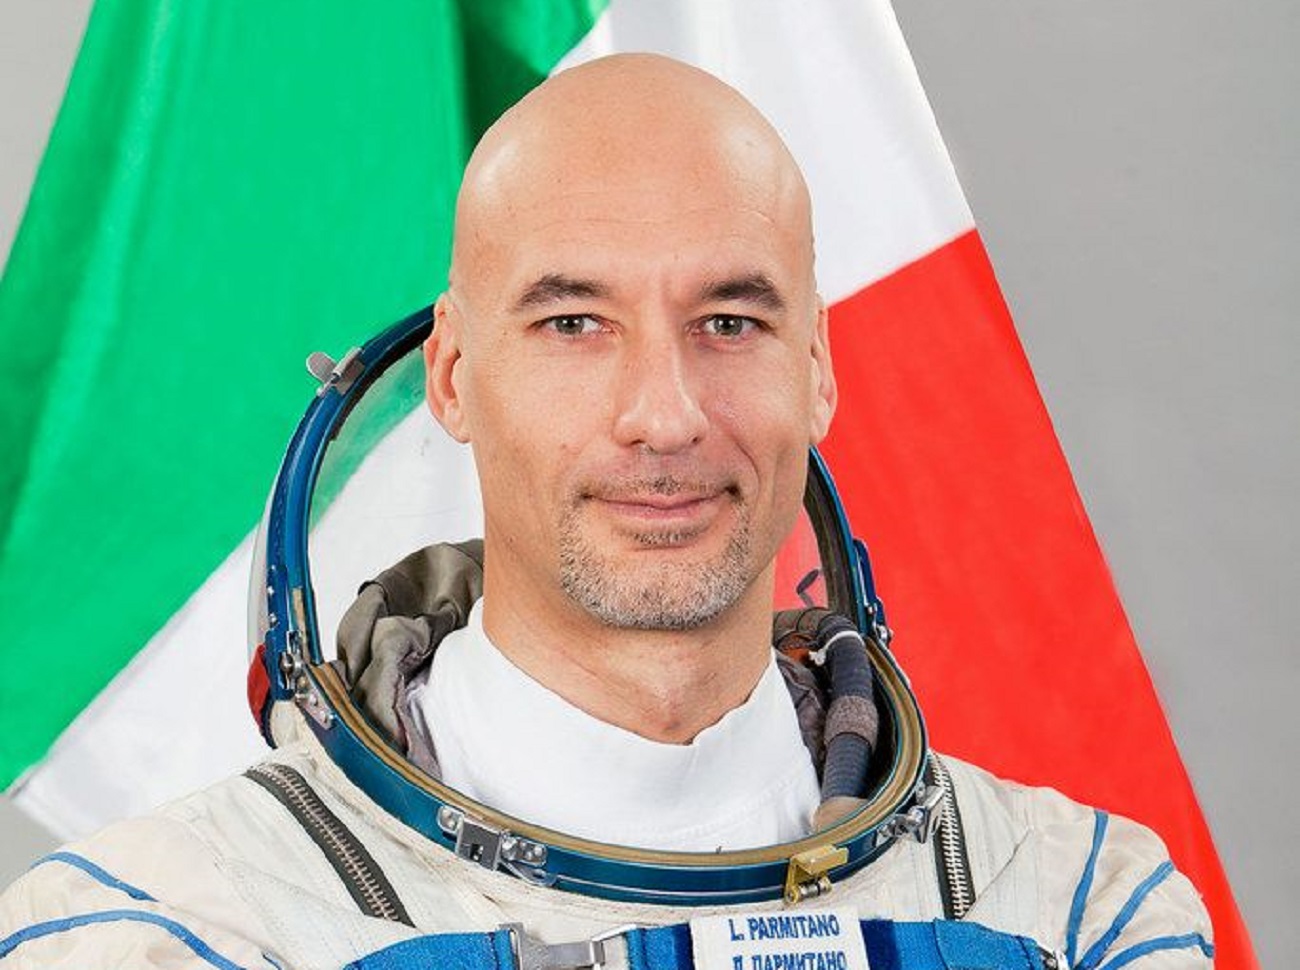 Dagli argonauti agli astronauti, al Liceo Cutelli-Salanitro “atterra” domani Luca Parmitano